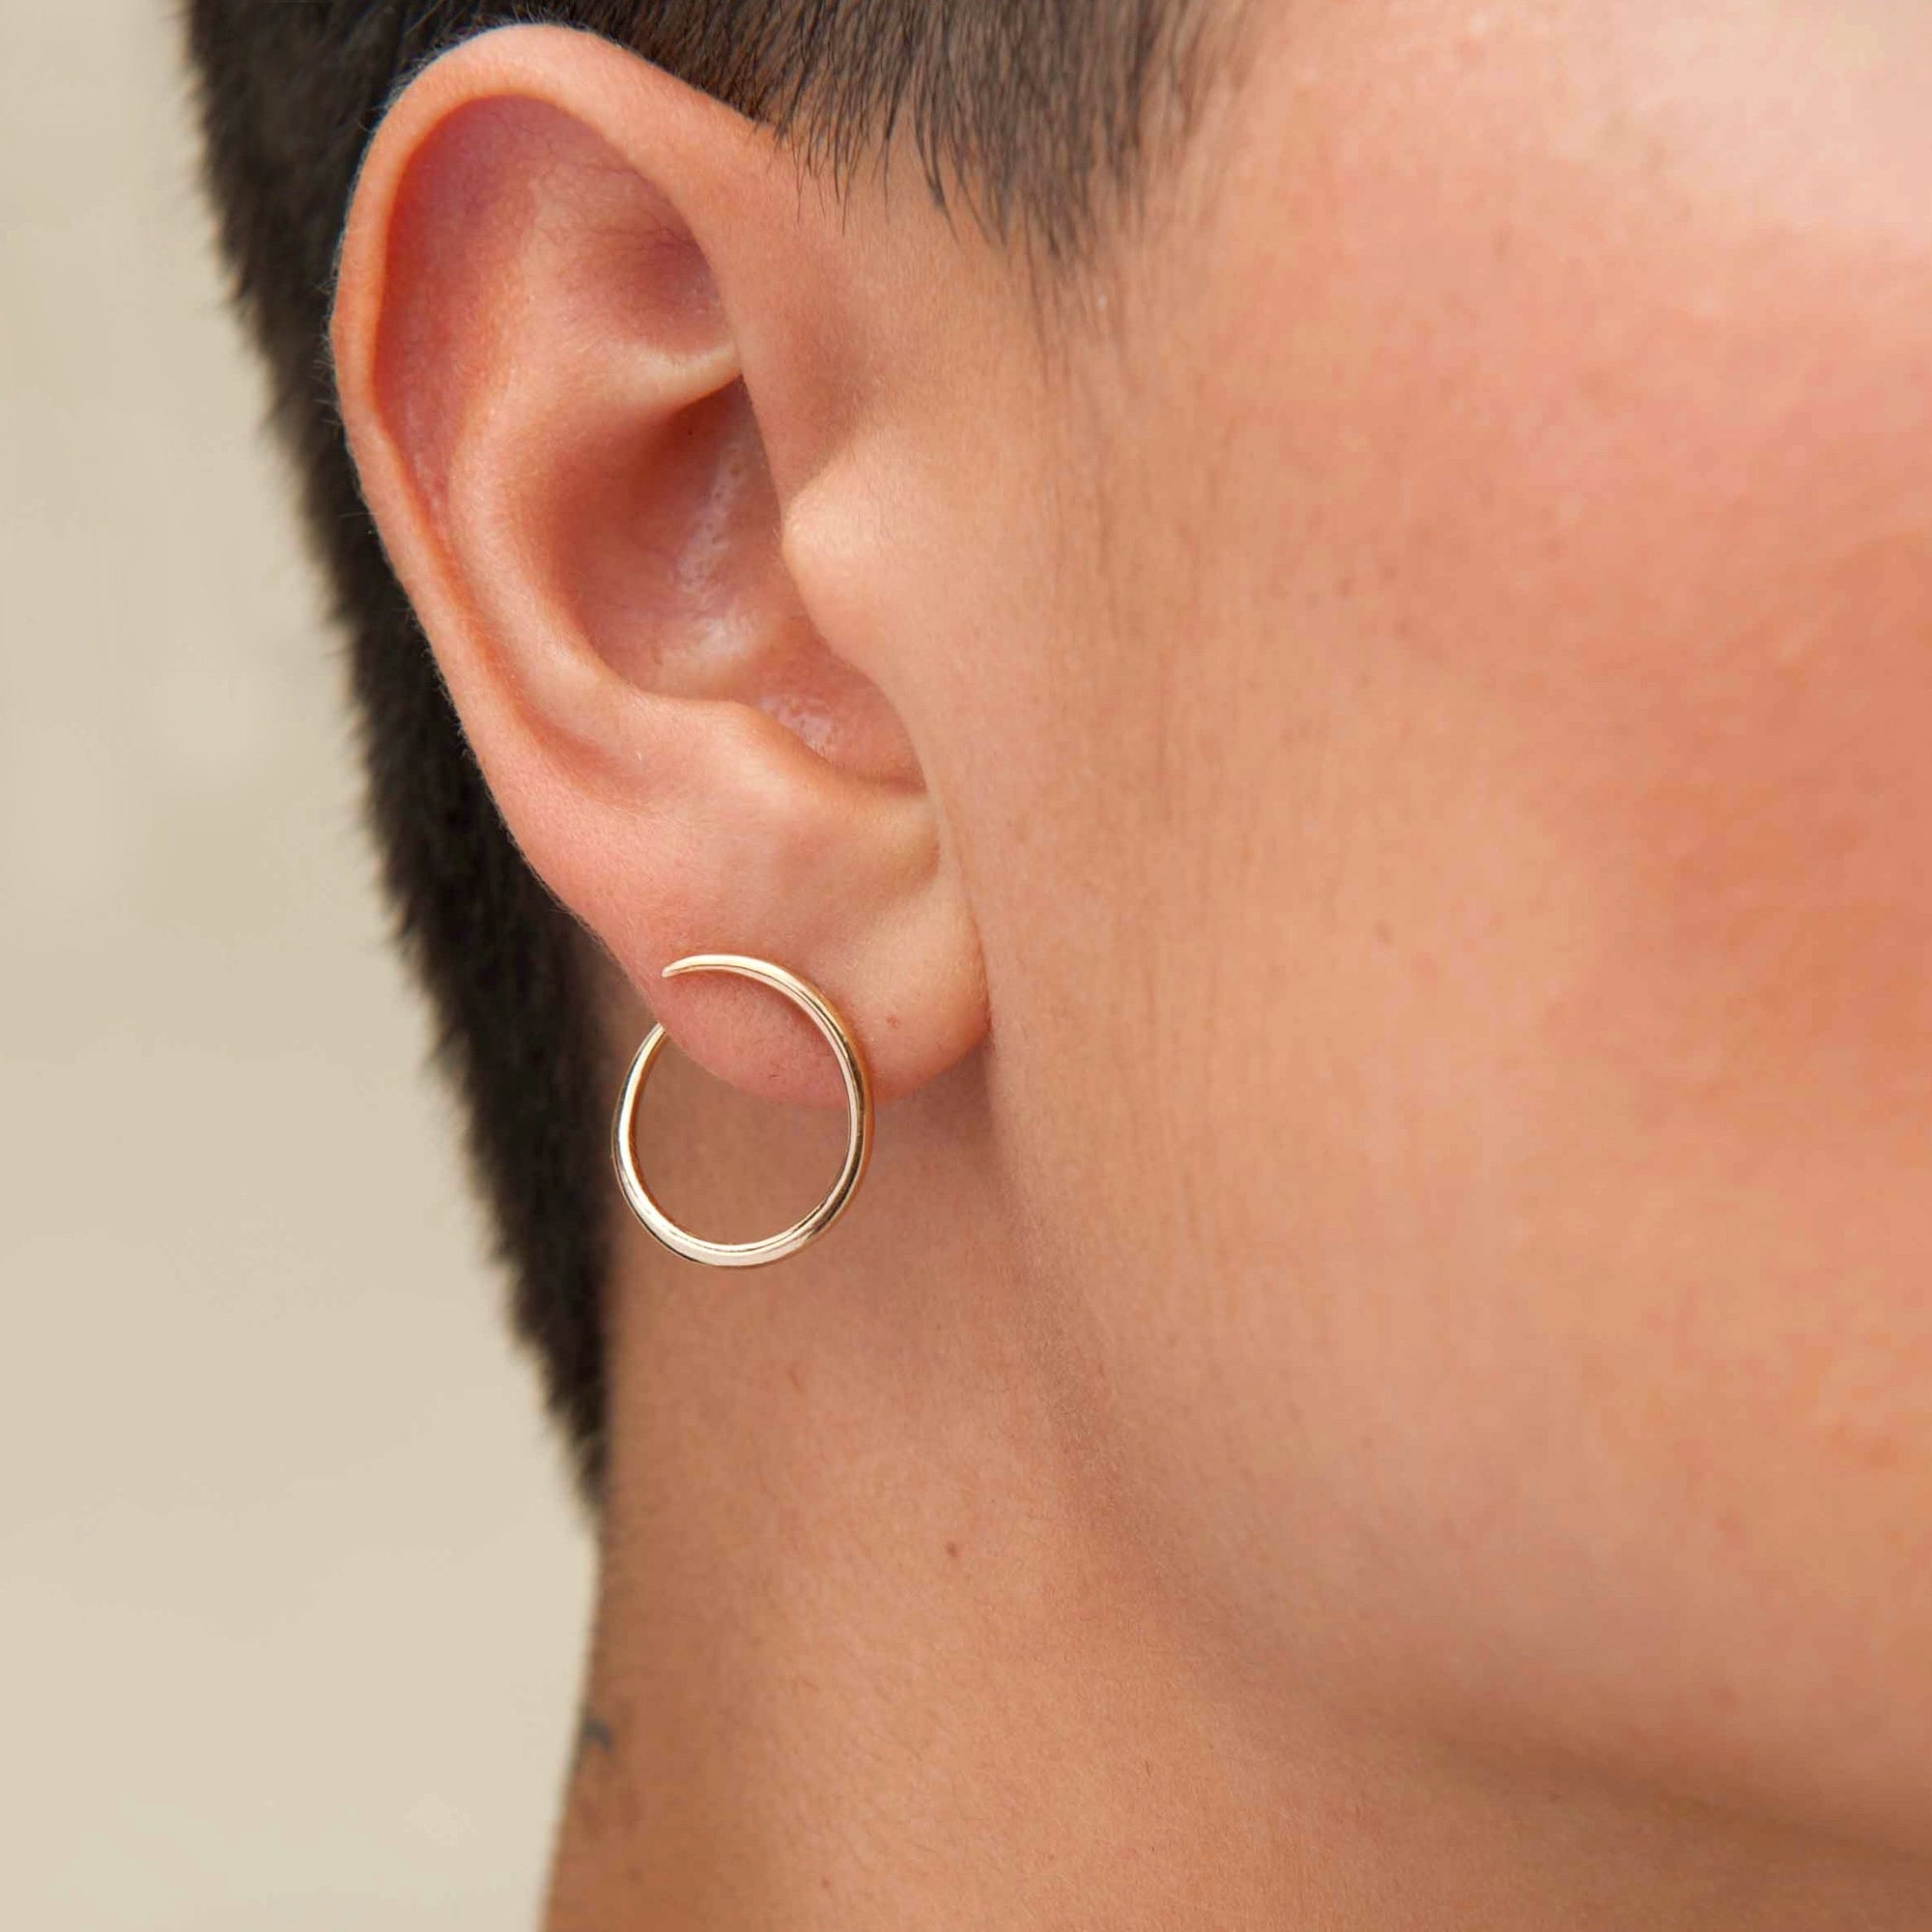 Solid 14k gold modern hoop earrings that wrap around earlobe. 